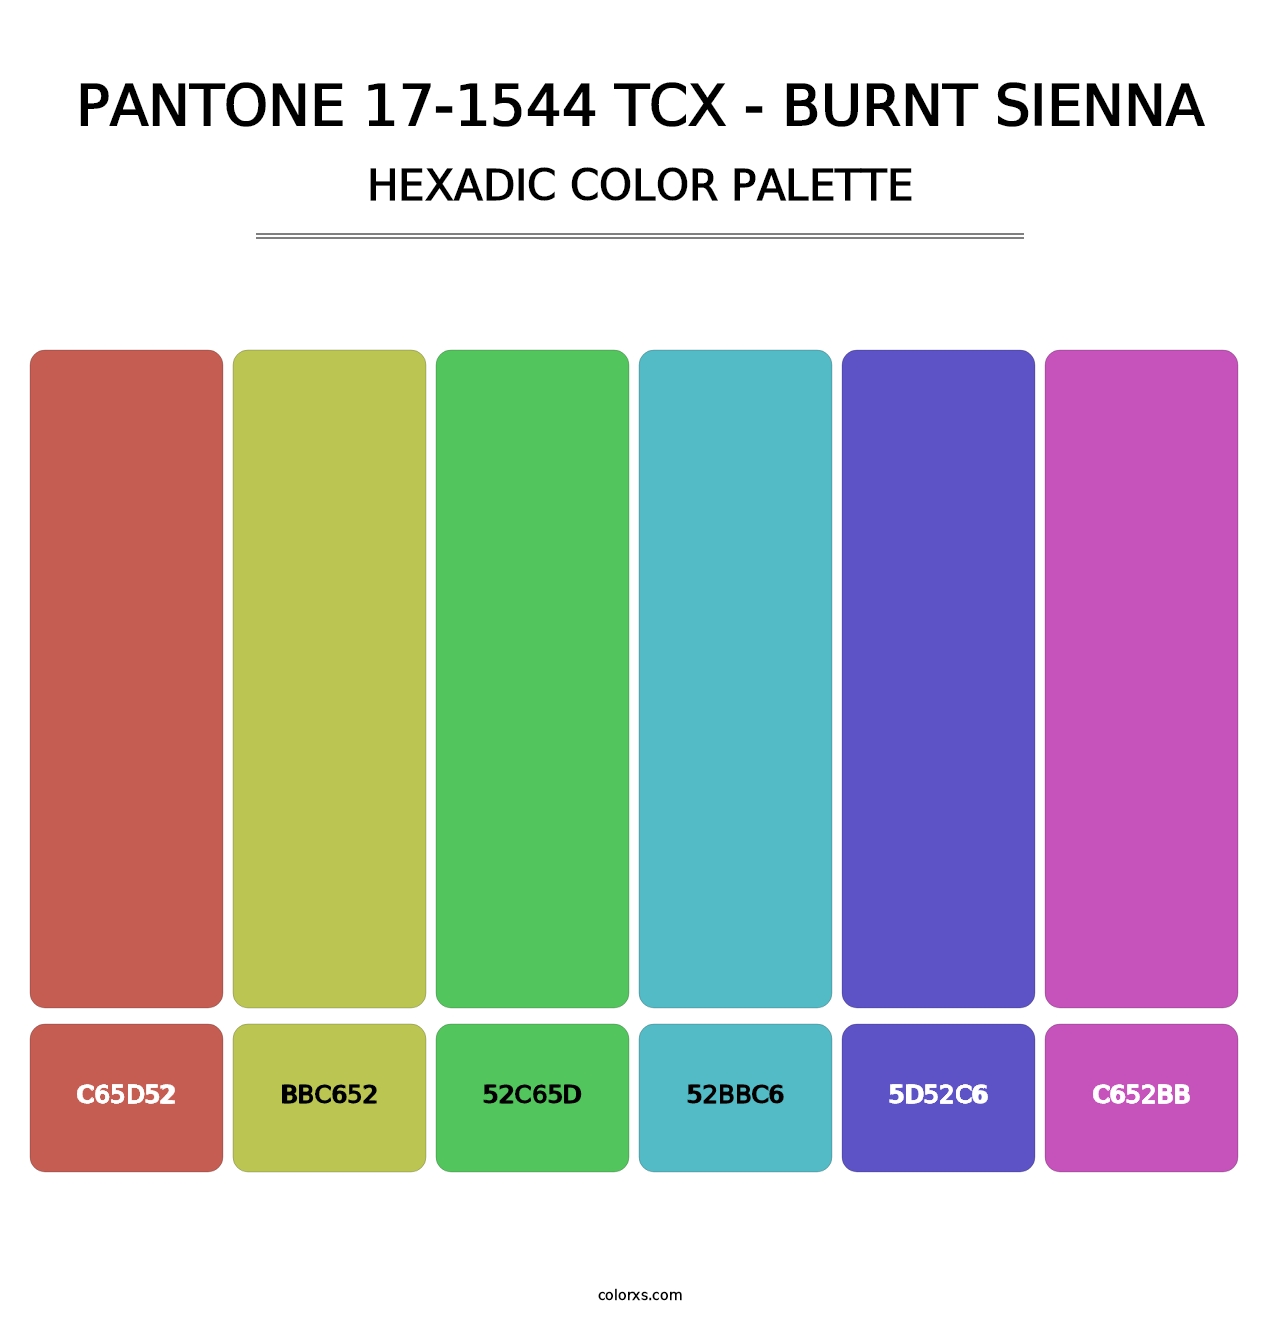 PANTONE 17-1544 TCX - Burnt Sienna - Hexadic Color Palette